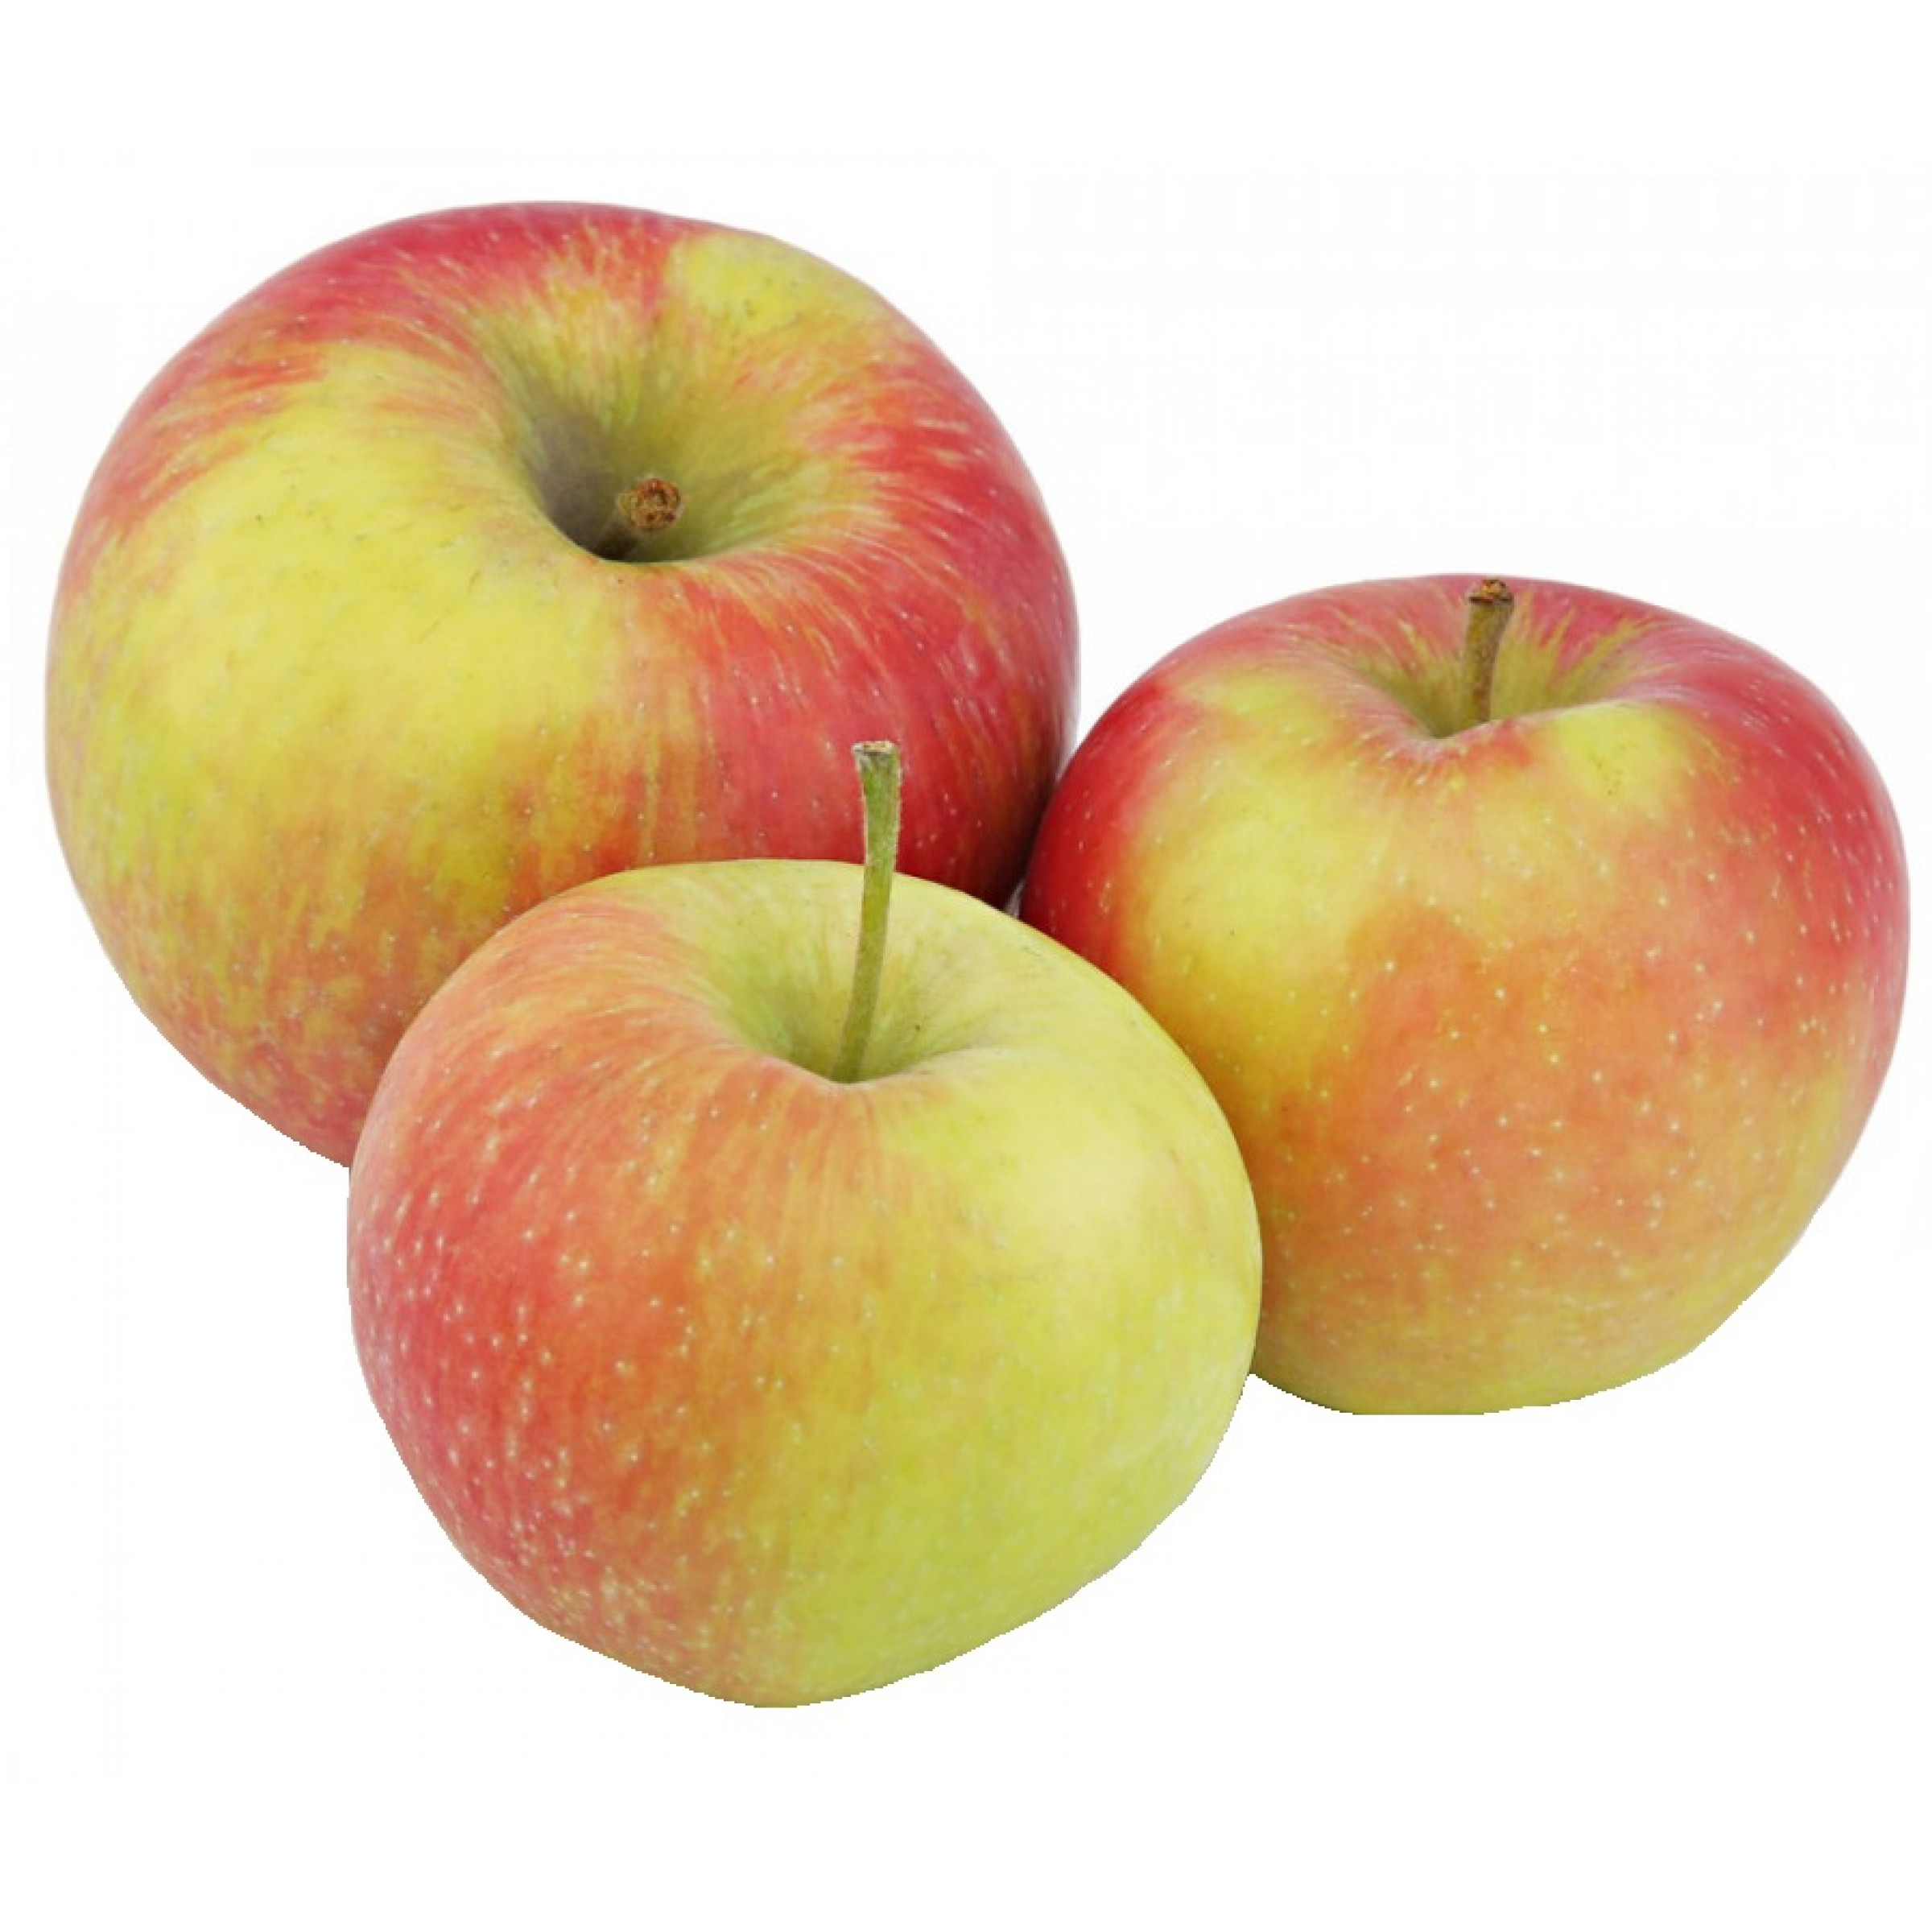 Сезонные яблоки весовые (средний вес: 1200 г)